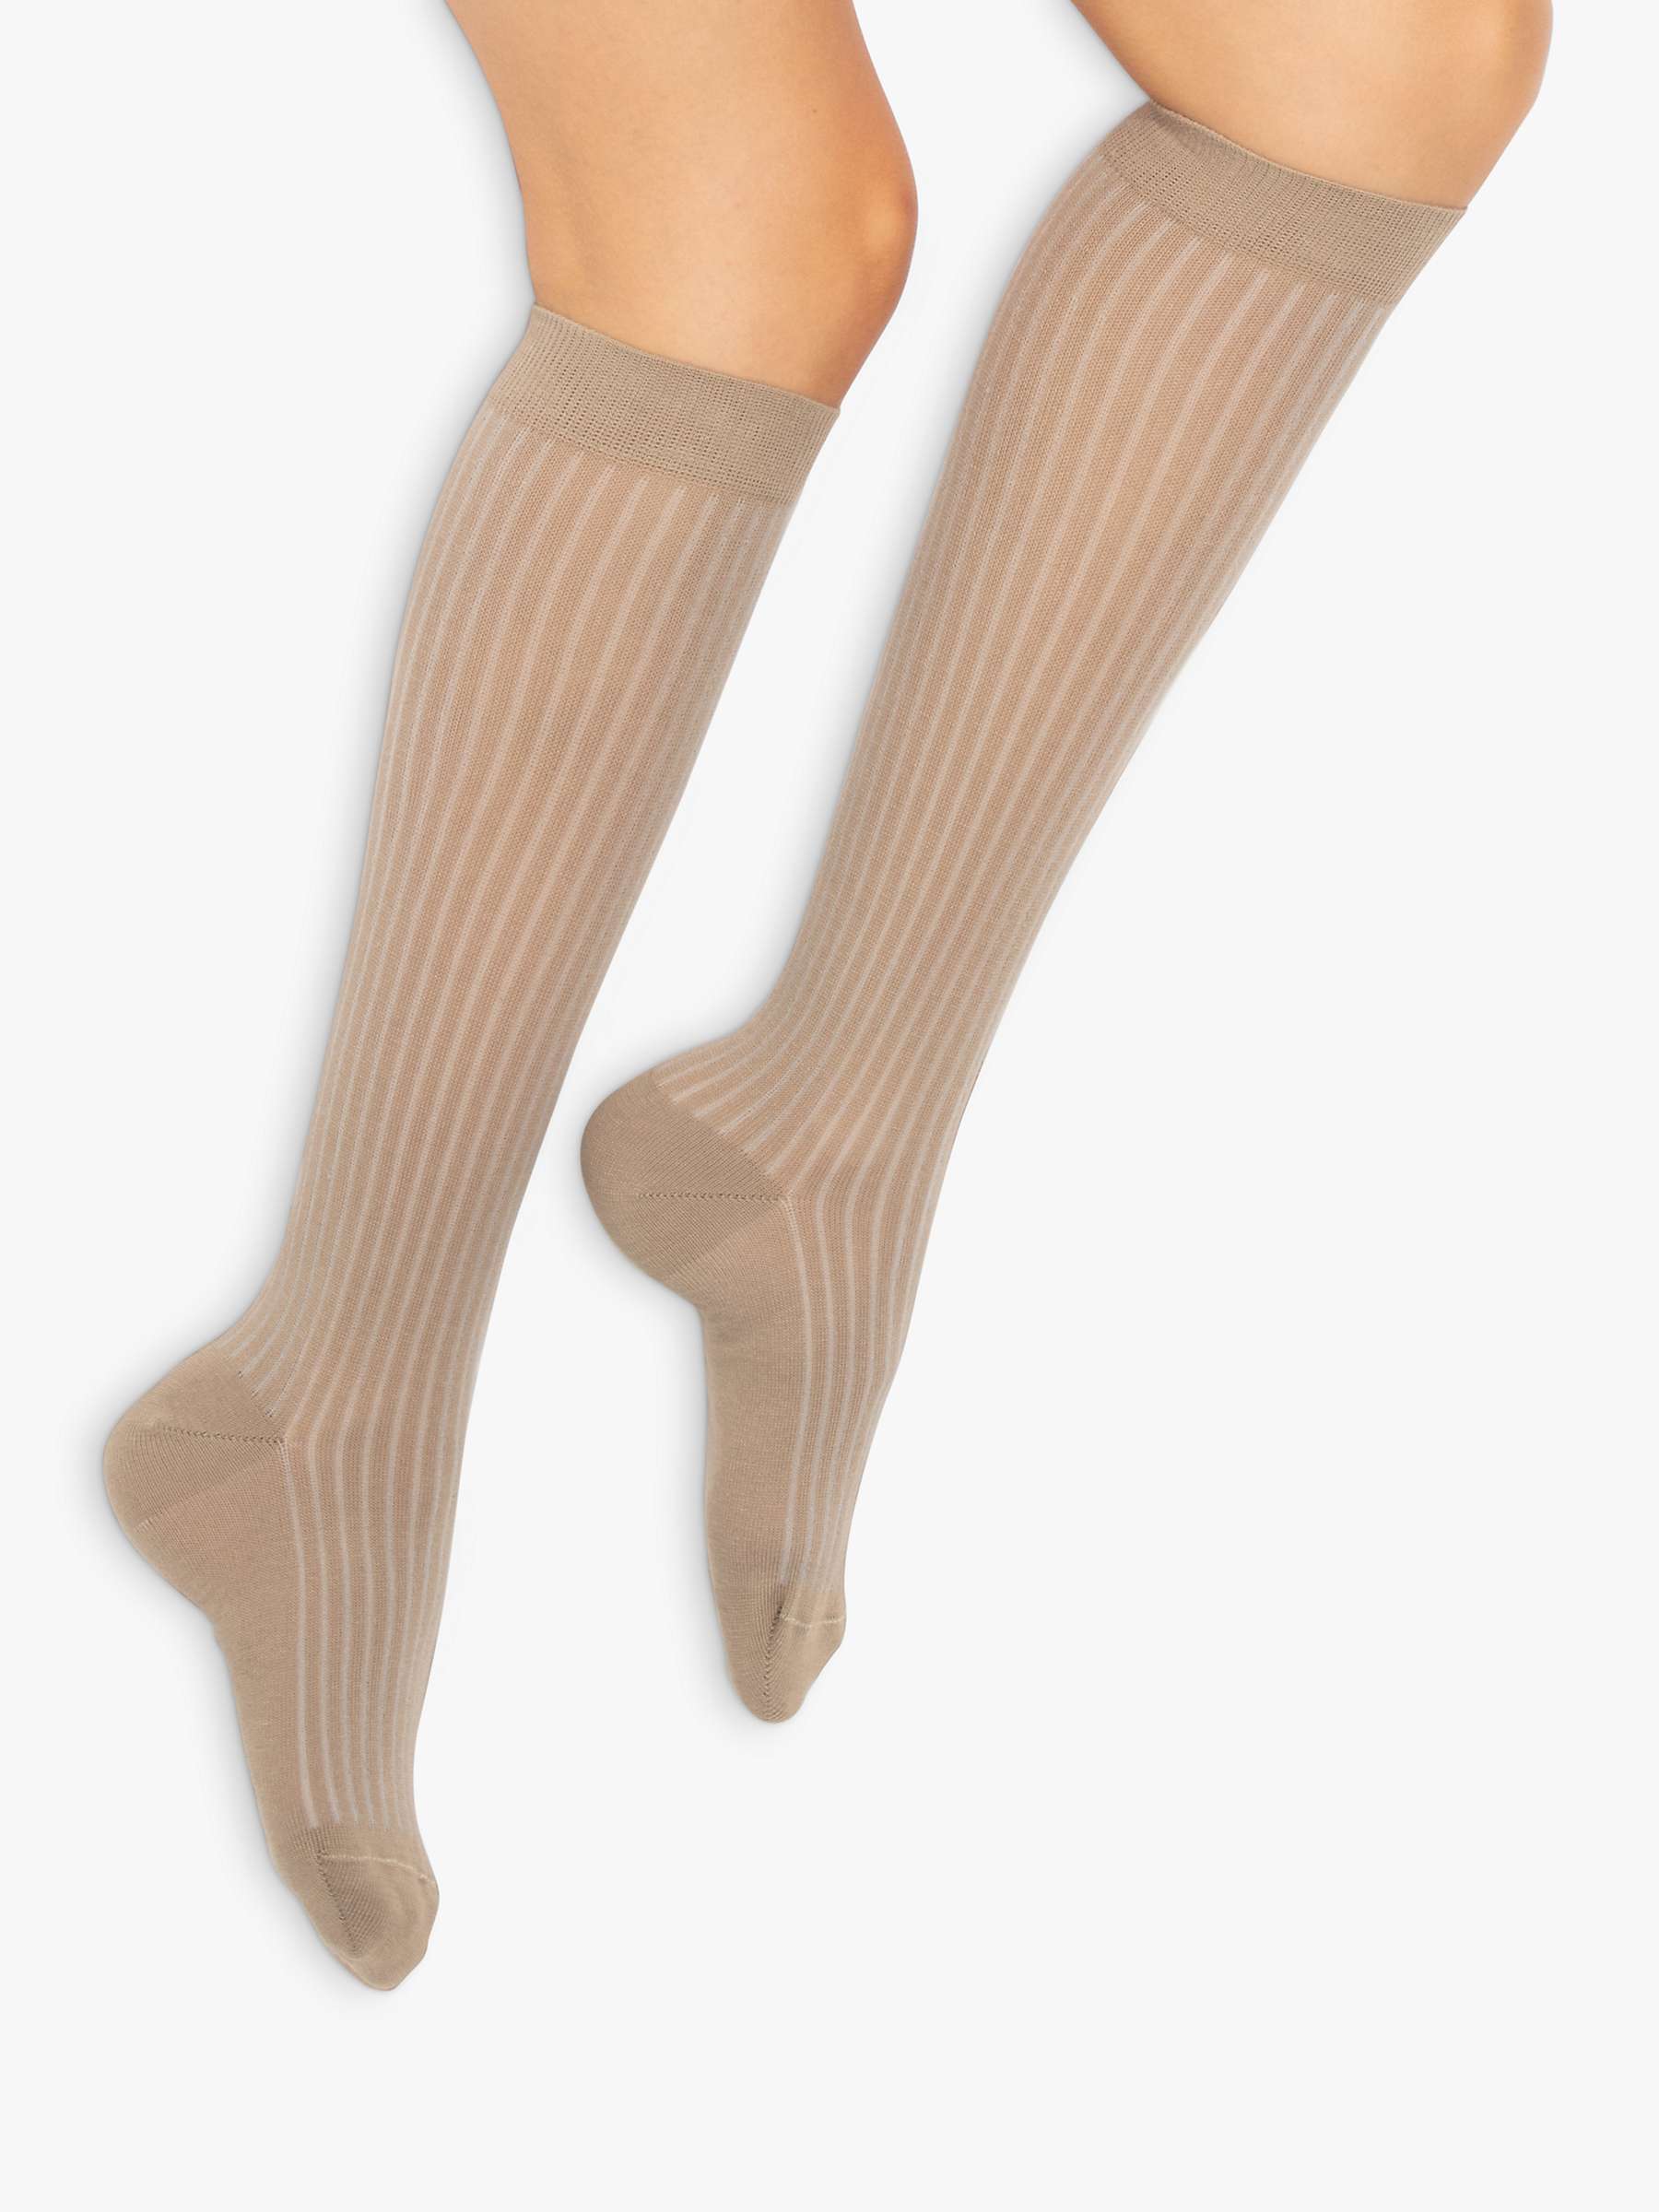 Buy Dear Denier Matilde Knee High Ribbed Socks Online at johnlewis.com